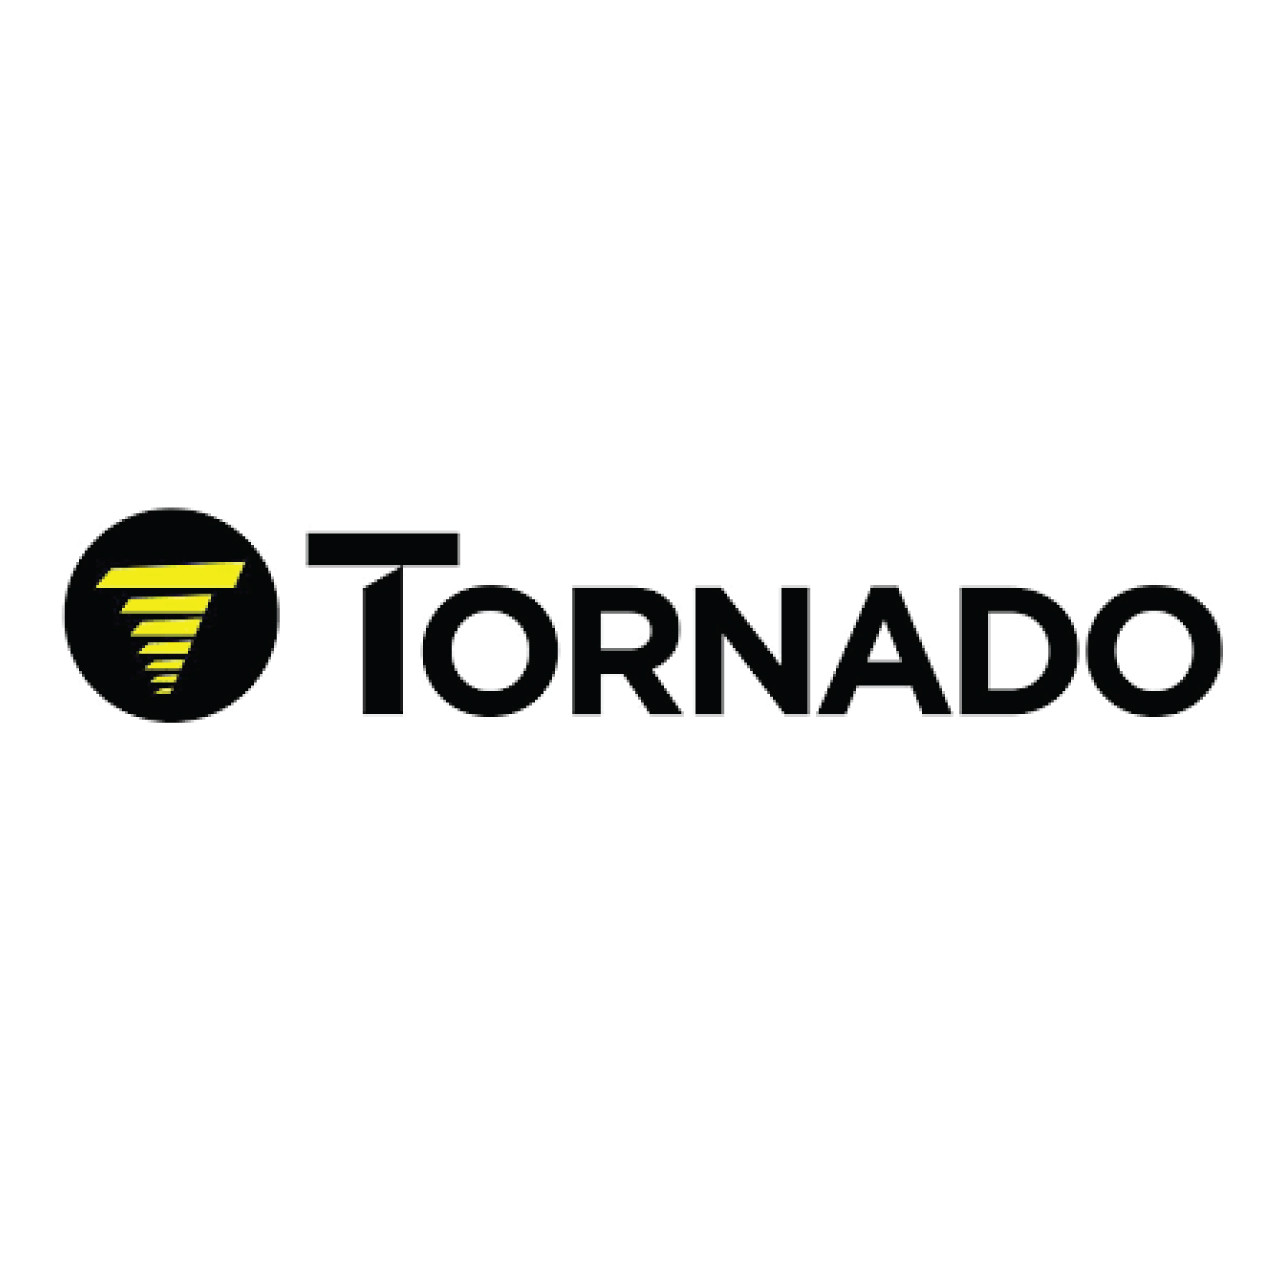 02-4574-0000, Tornado 02-4574-0000, Tornado Belt, 1449 X 30MM Nitta La500 (Blue/Blue)(Tolerance 3/-4), Tornado parts